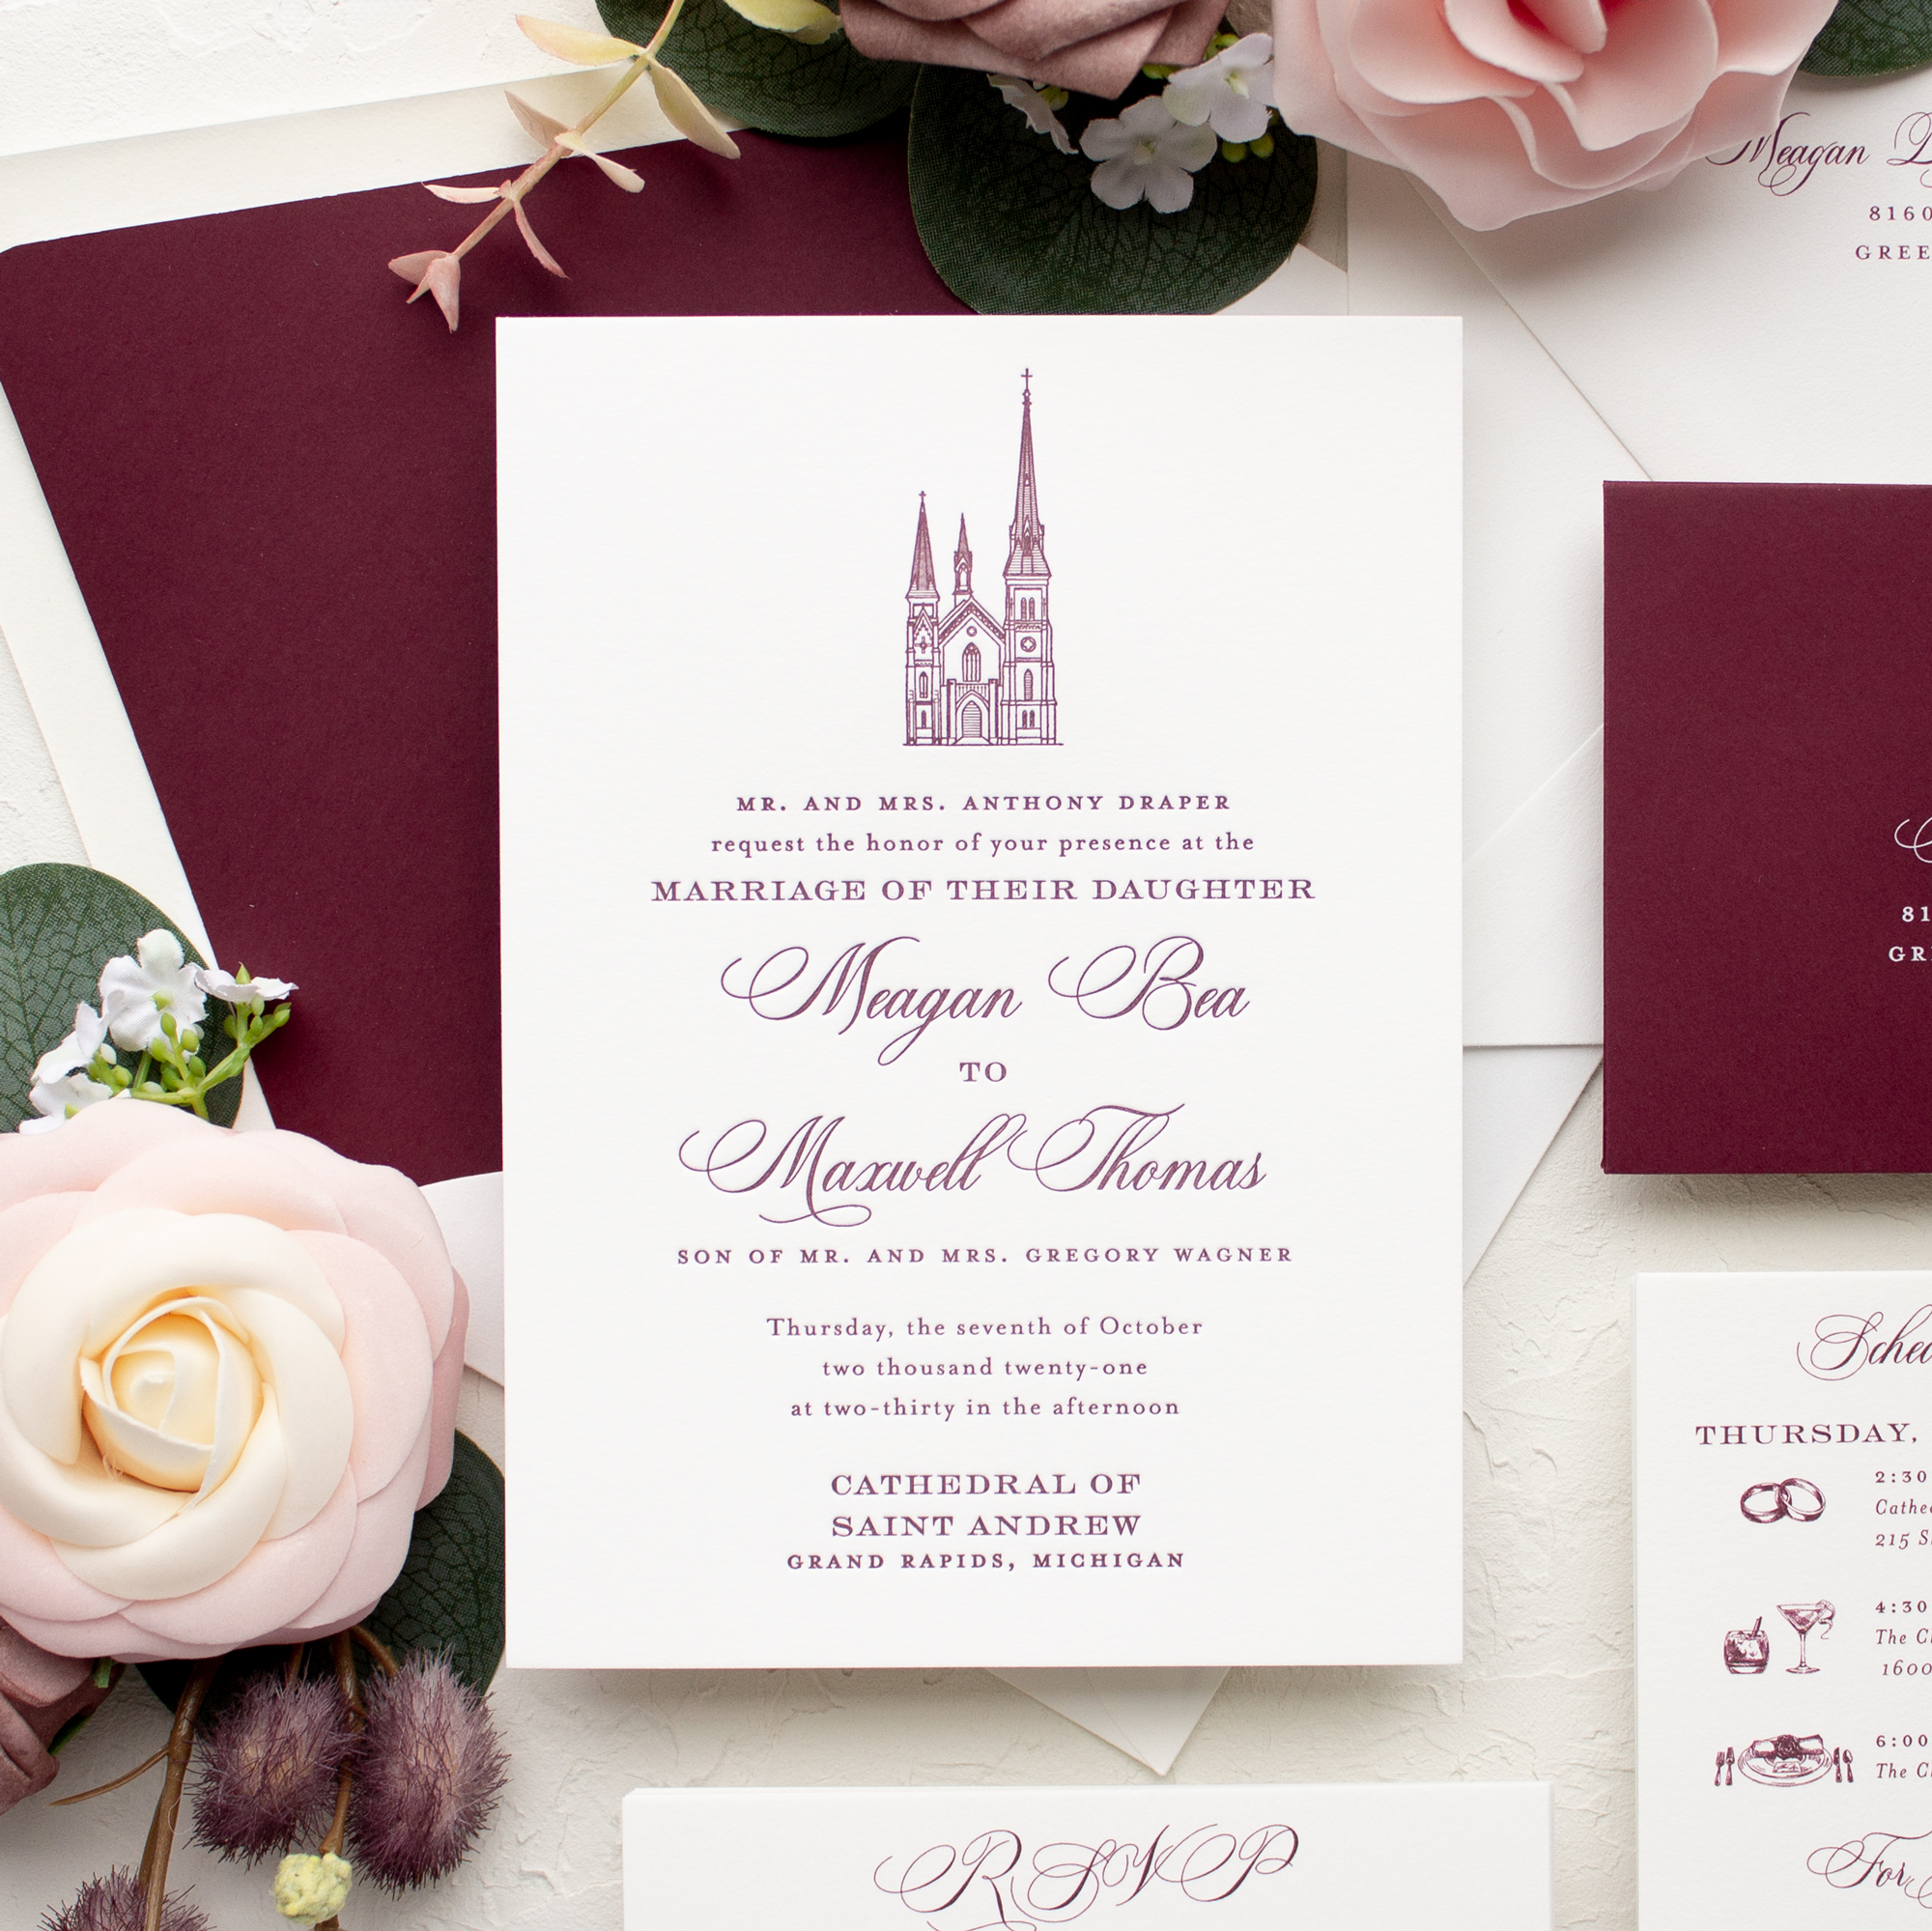 wedding invitations with venue sketch